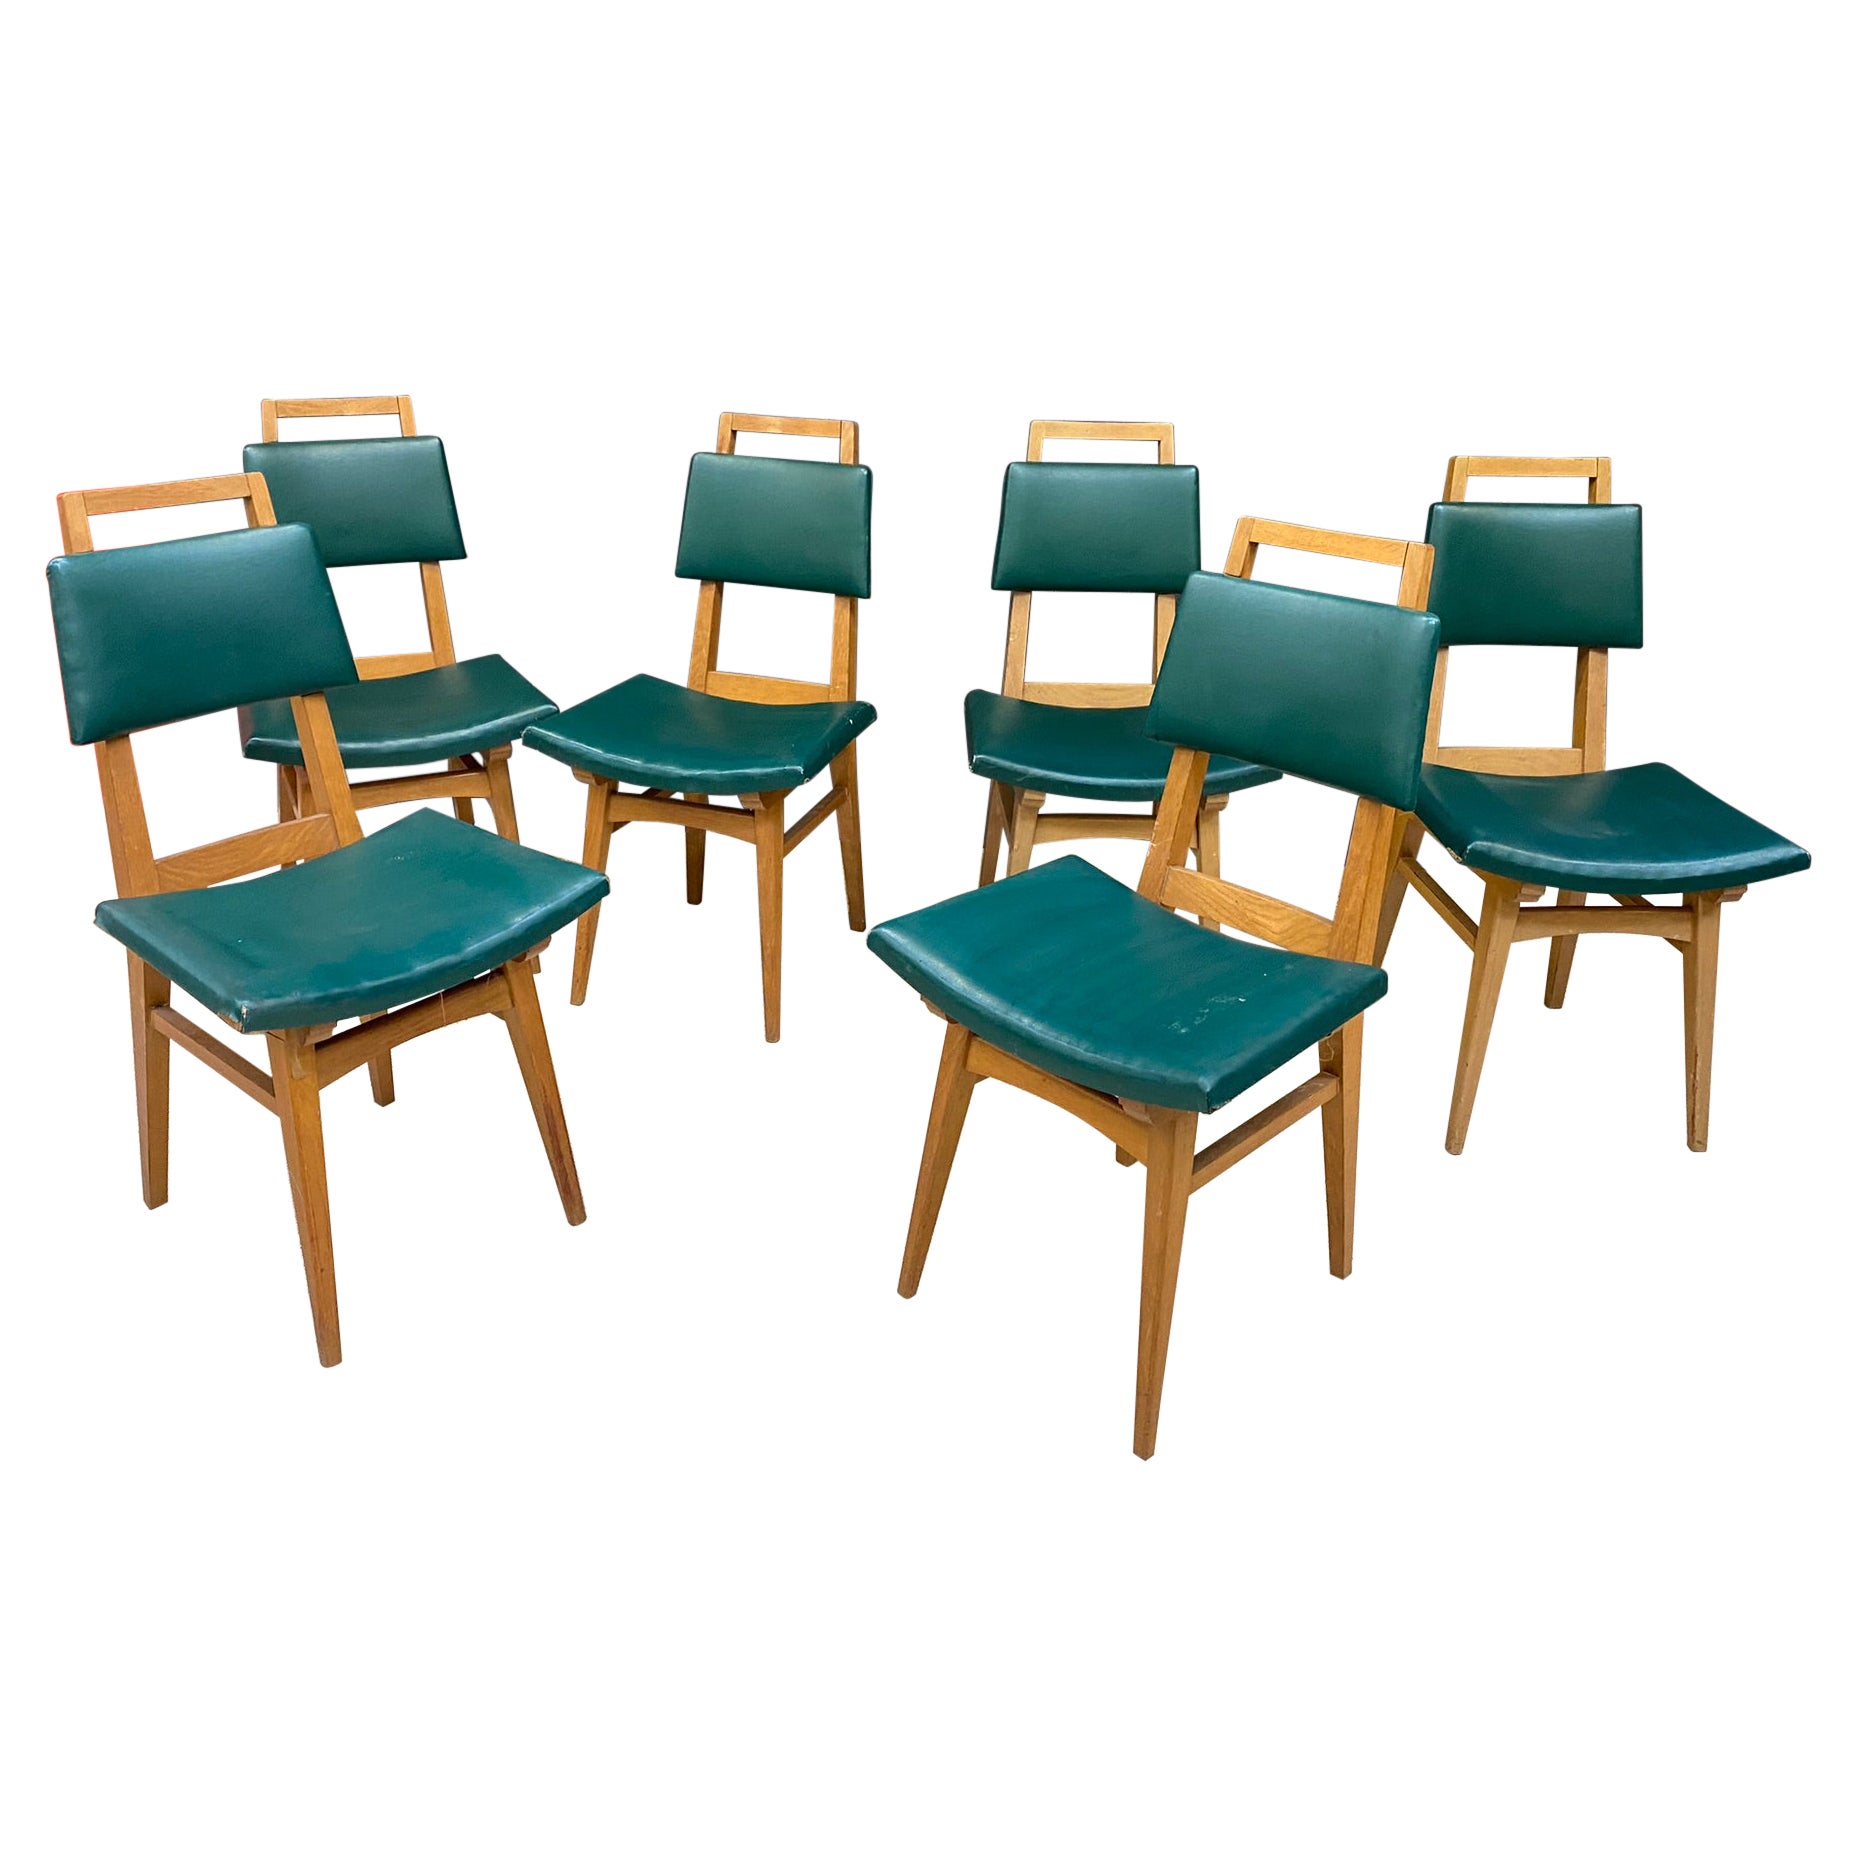 Suite de 6 chaises en chêne, vers 1950